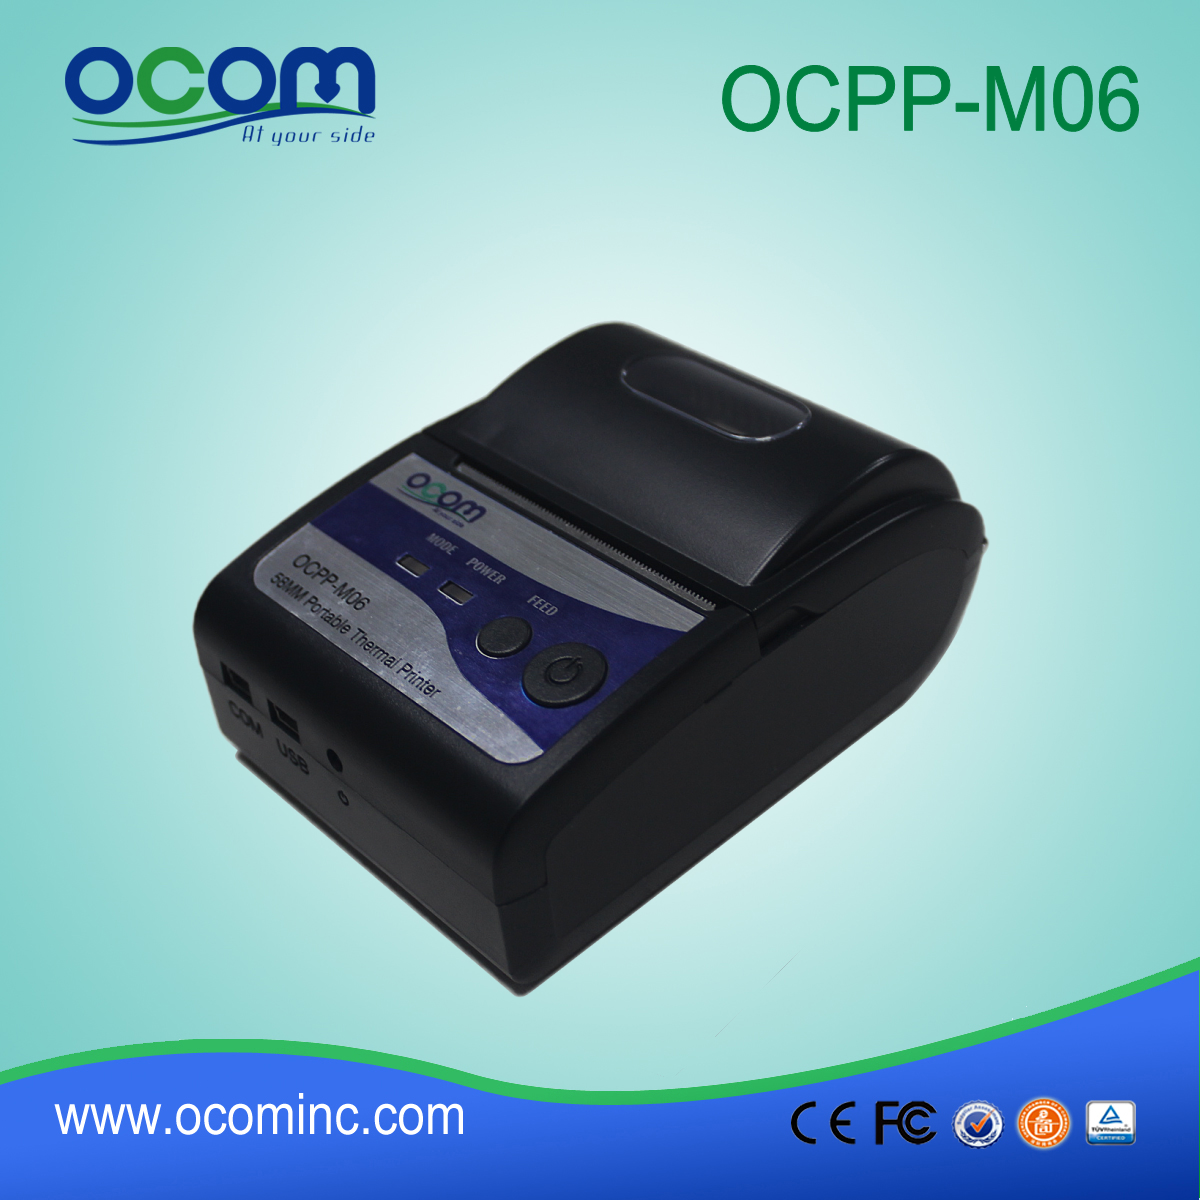 OCPP-M06: OCOM caliente mini impresora térmica portátil bluetooth 58mm vender